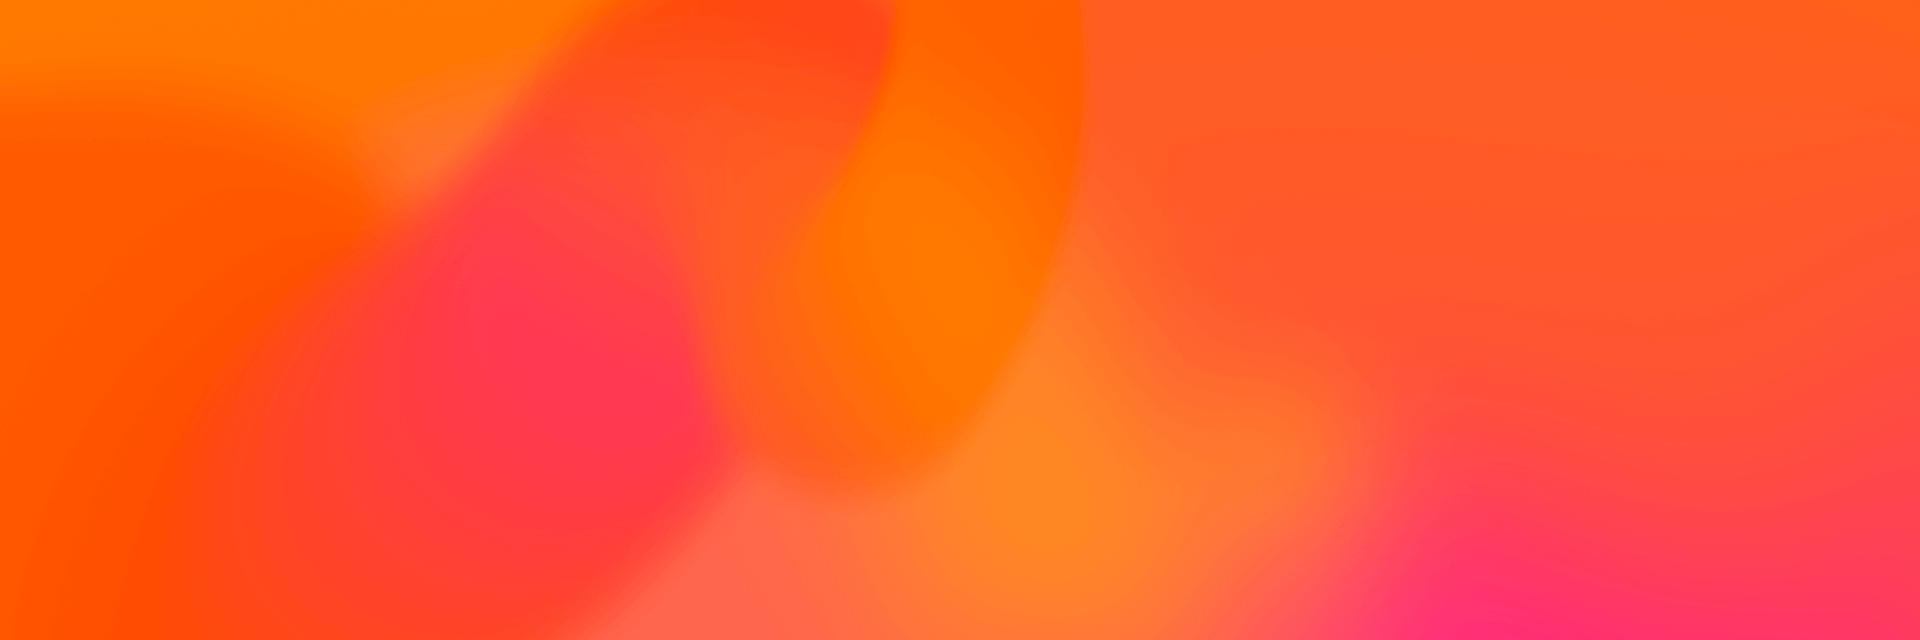 Färgglad bakgrundsbild i orange och rosa